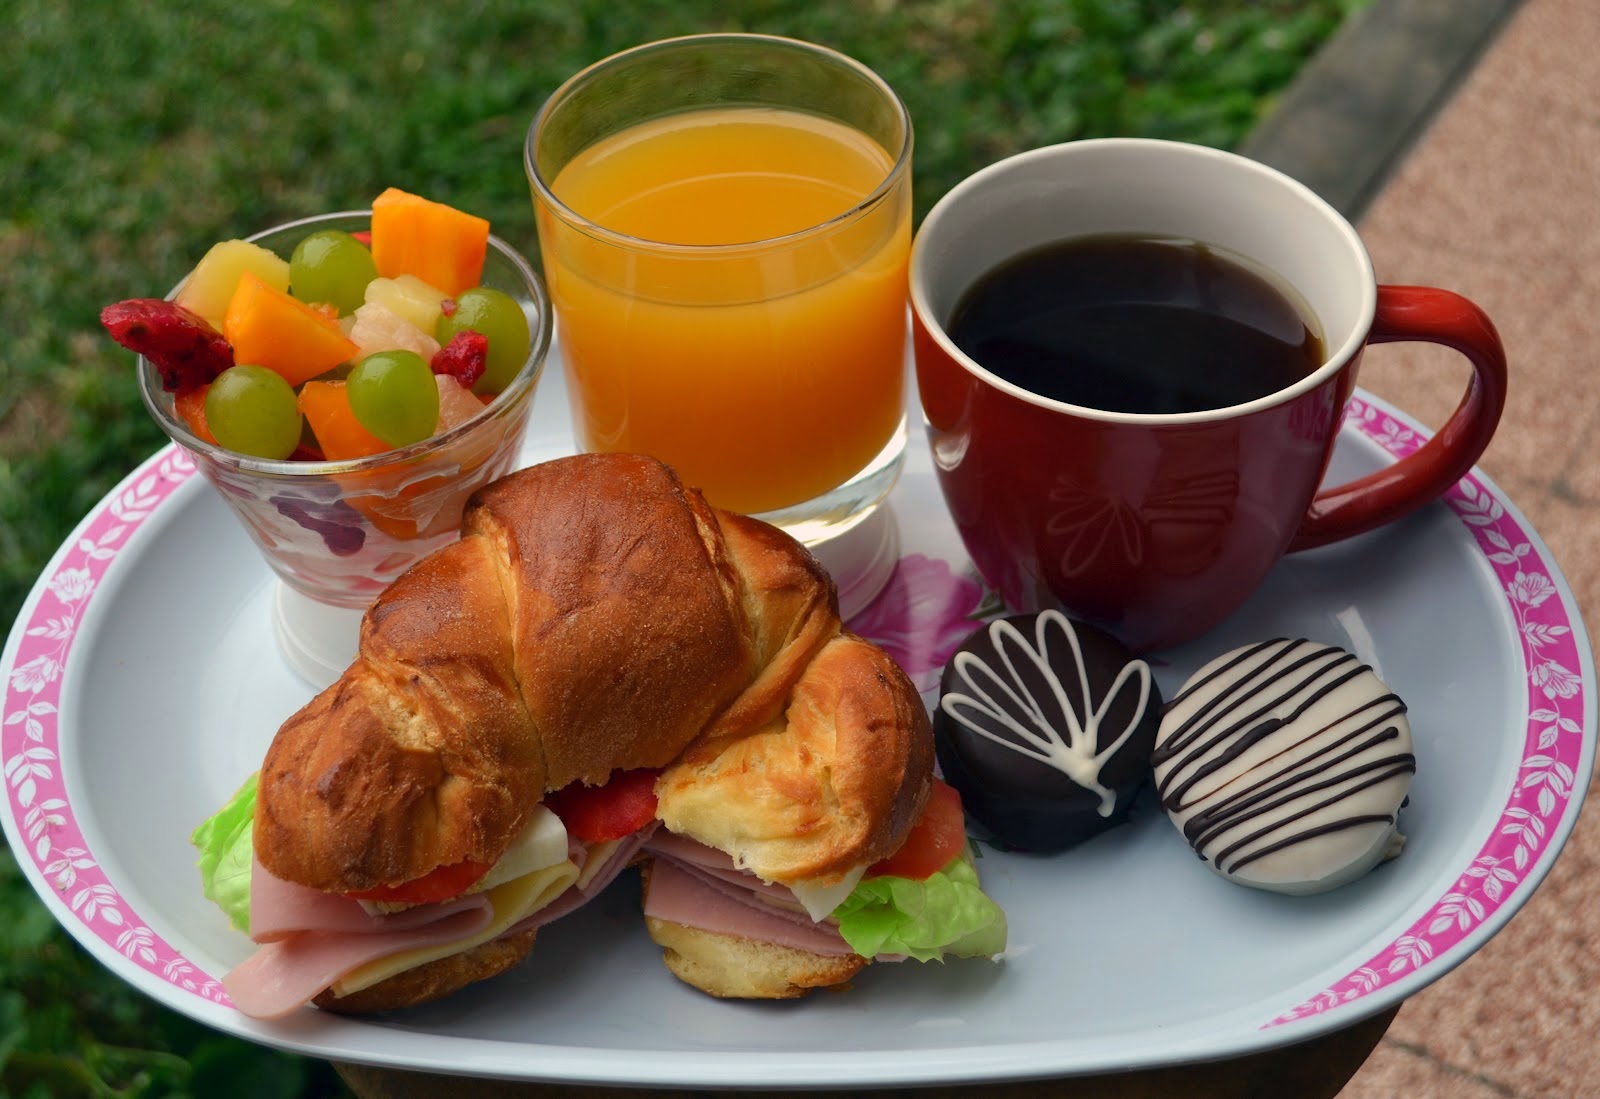 Al momento stai visualizzando La colazione europea: il pasto tipico dei campioni nel continente